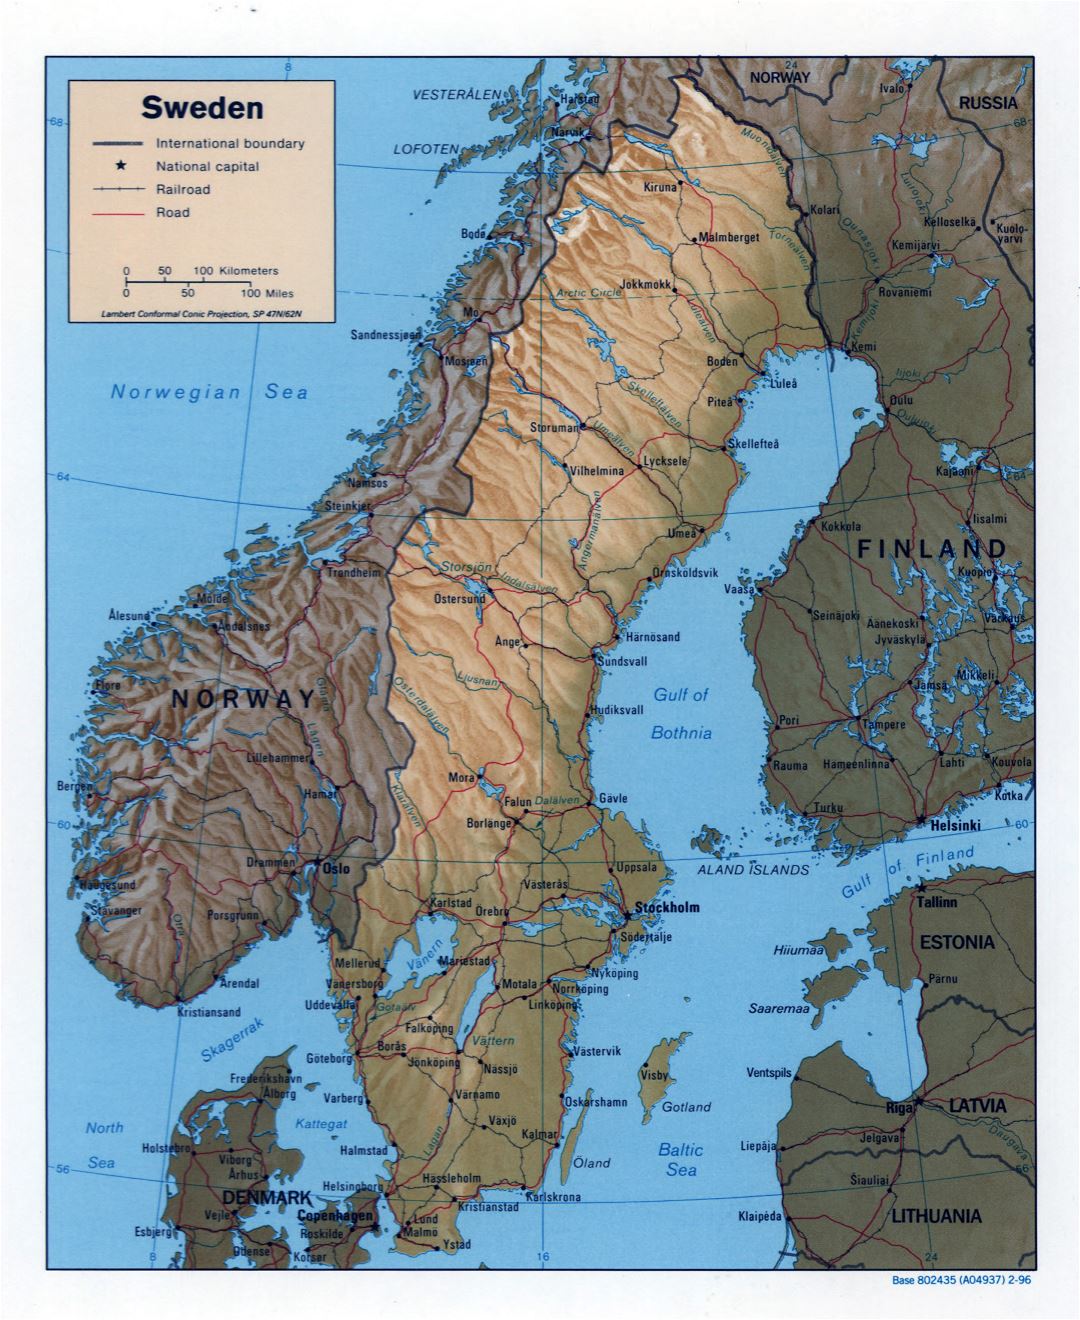 Grande detallado mapa político de Suecia con relieve, carreteras, ferrocarriles y ciudades principales - 1996